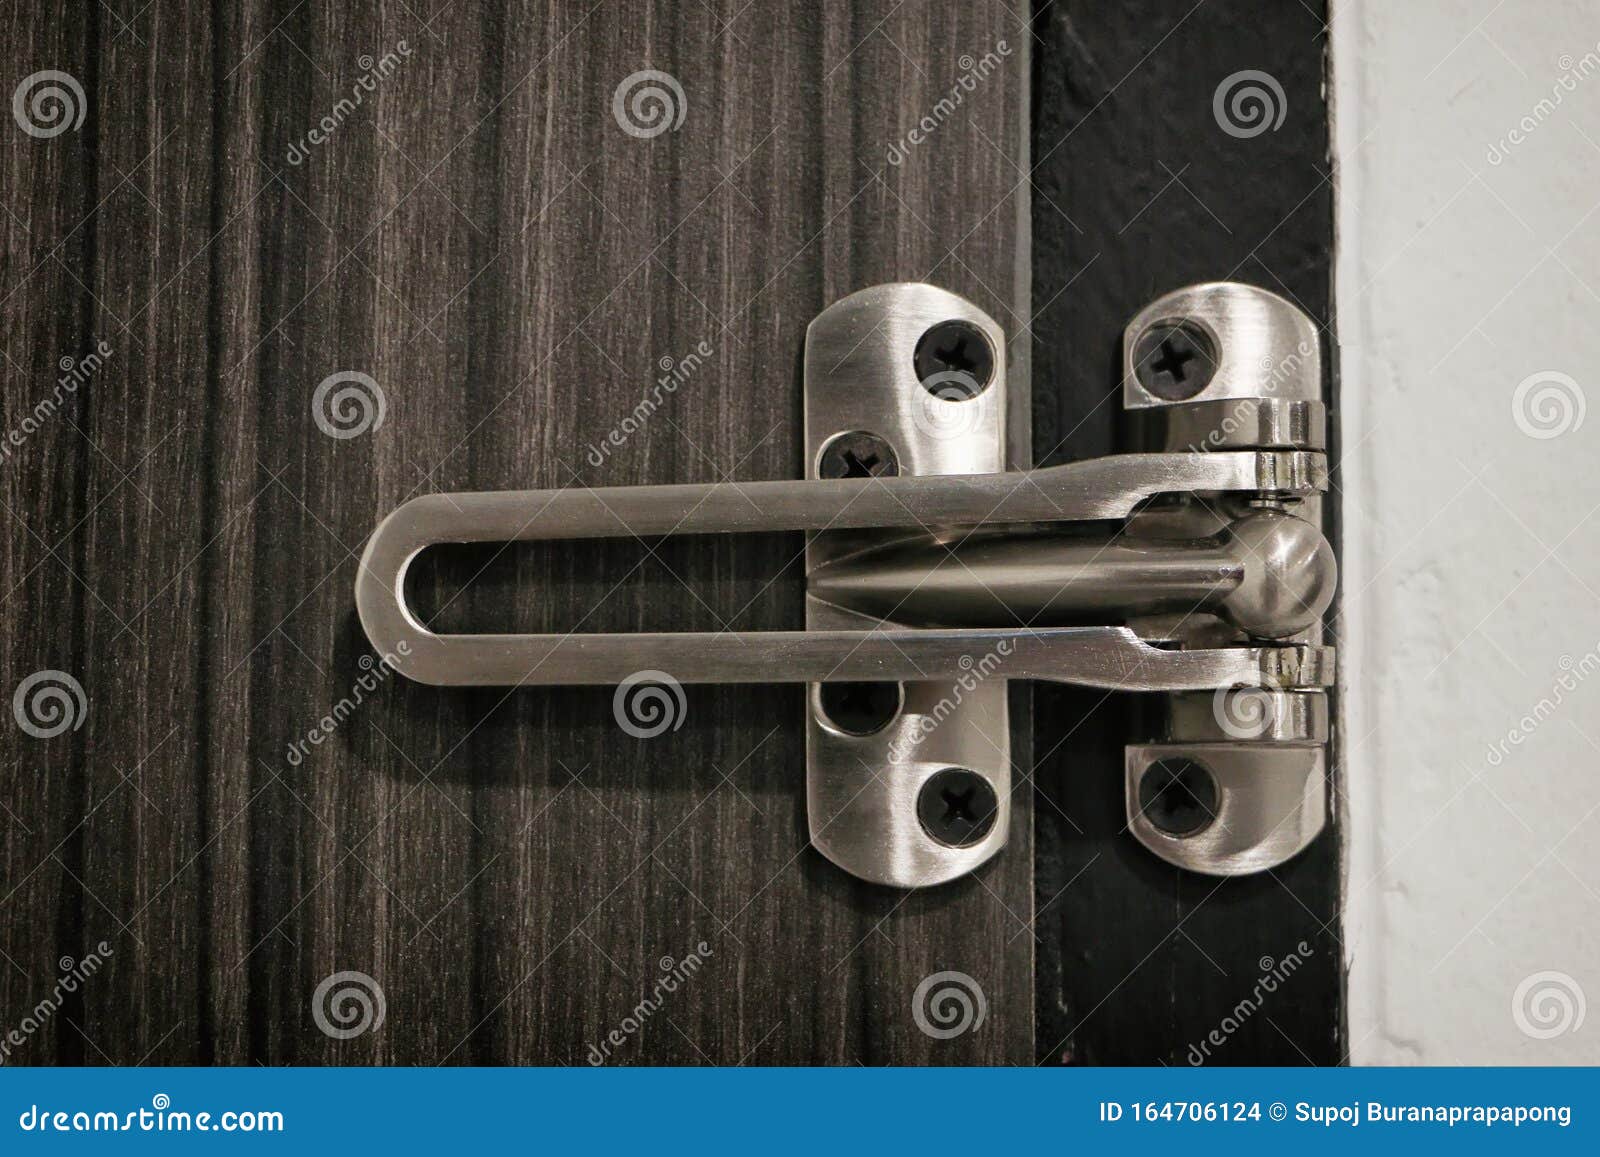 Metallriegel-Türschutz, Sicherheitsriegel, Schleusentüre